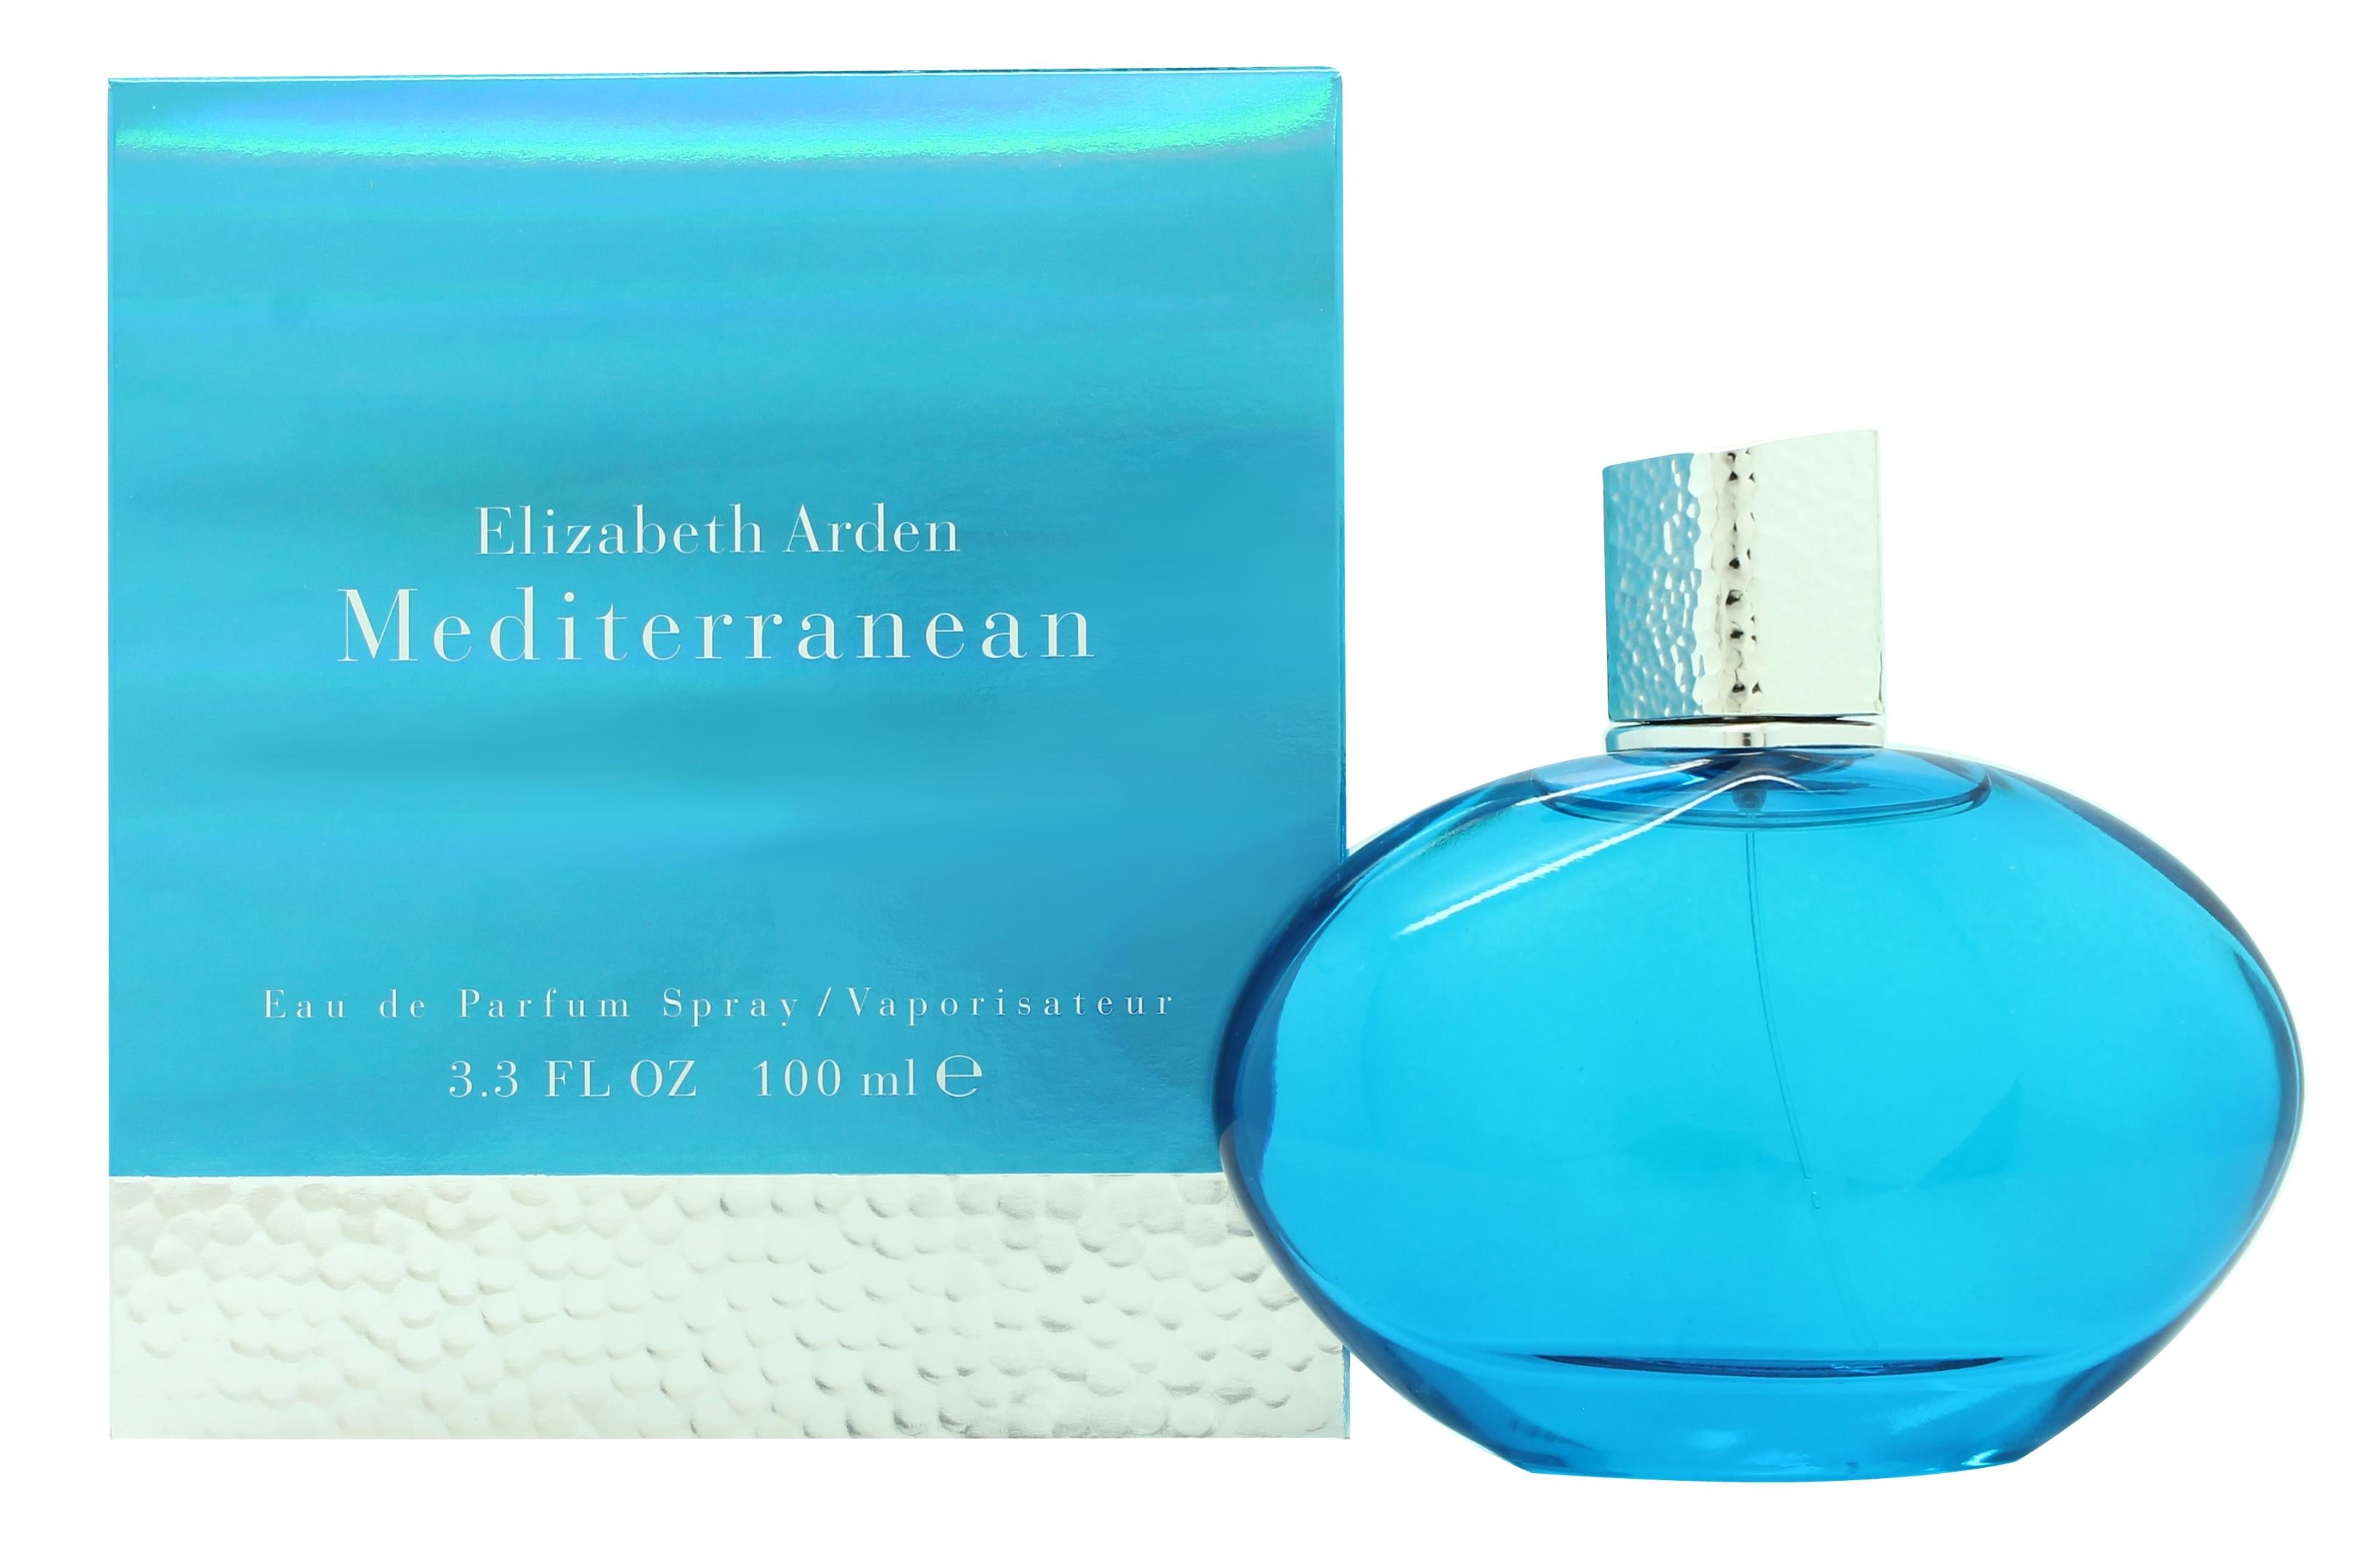 View Elizabeth Arden Mediterranean Eau de Parfum 100ml Spray information